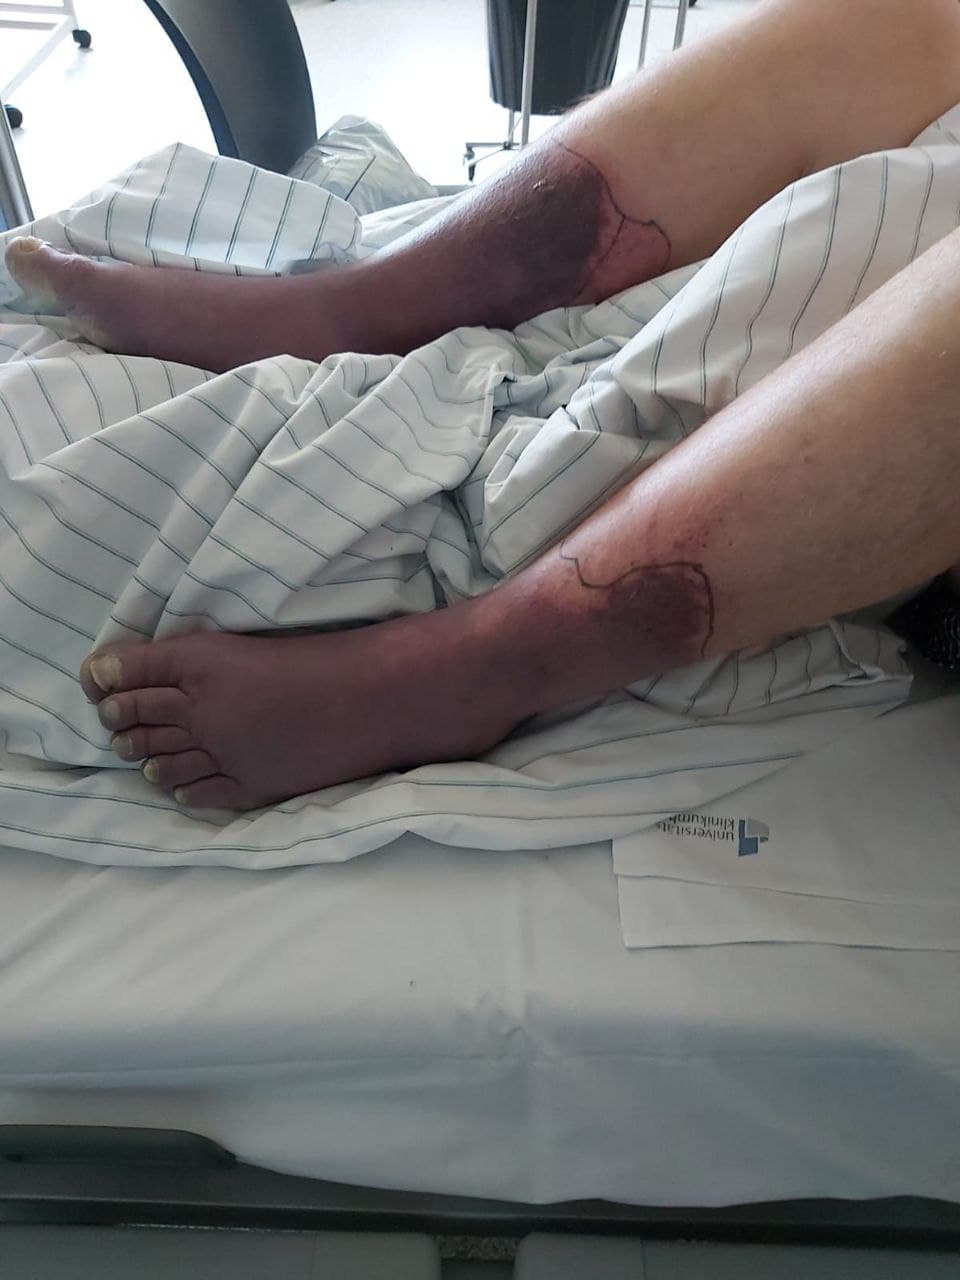 GENimpfmord NRW 21.1.2022: Person GENgeimpft
                  stirbt an gigantischen Thrombosen an den Beinen, Foto
                  2